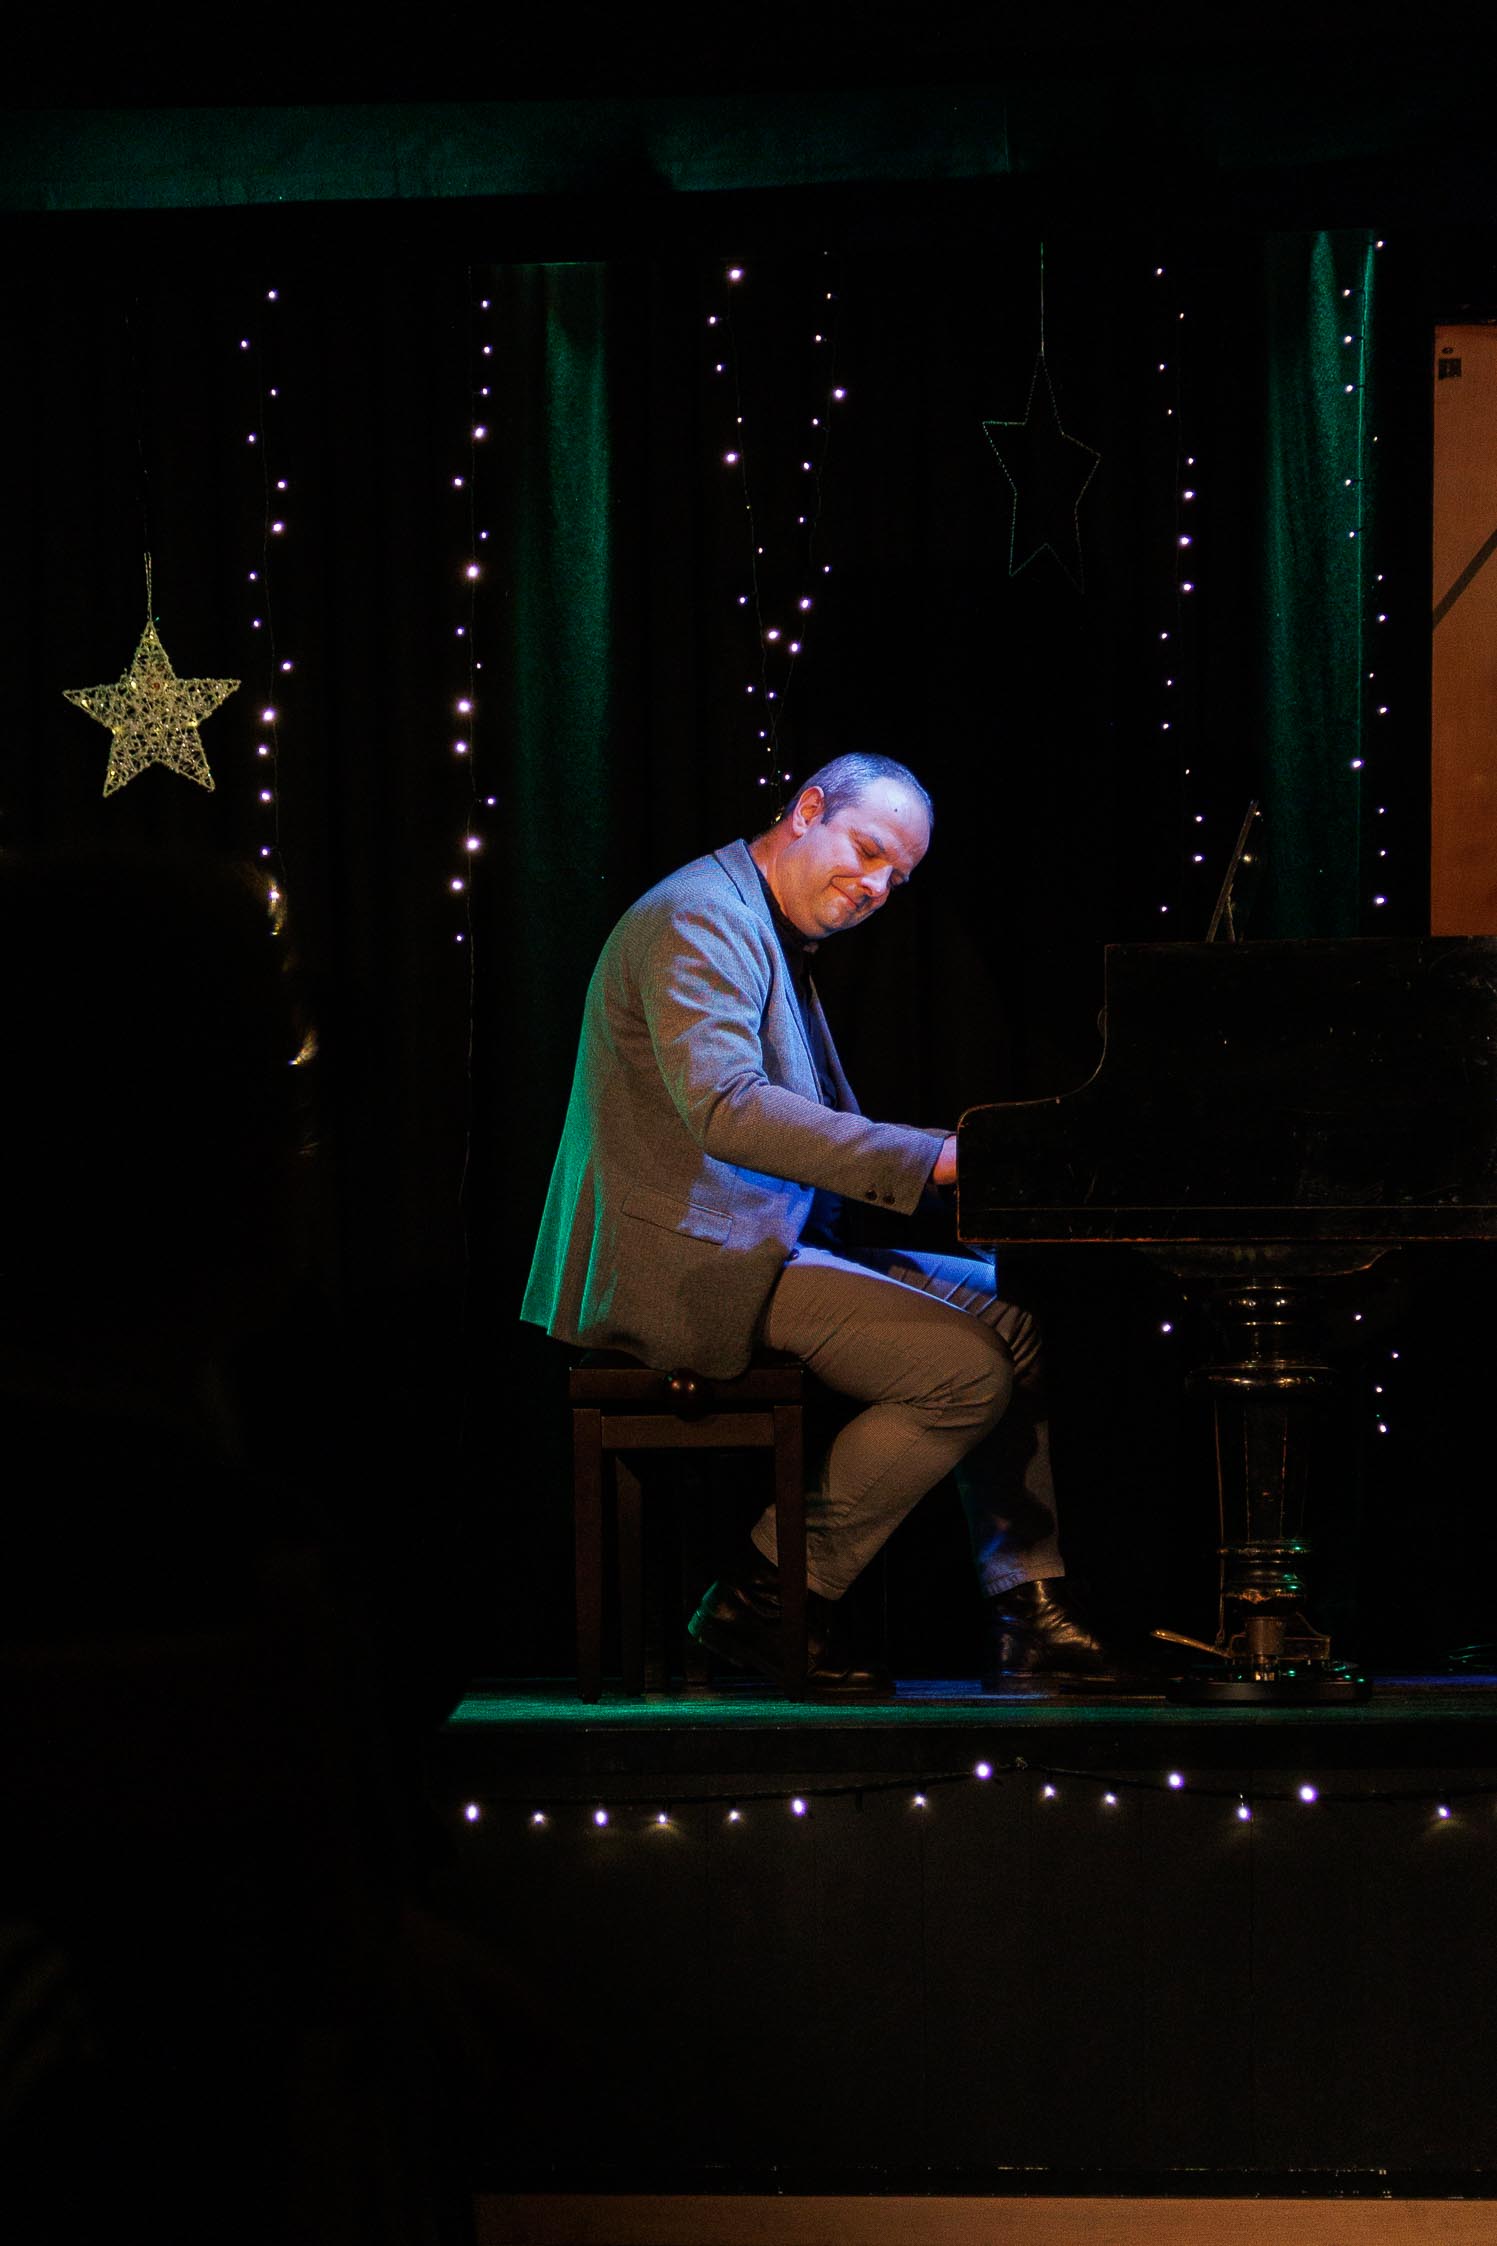 mężczyzna w średnim wieku, z przejęciem gra na fortepianie, ubrany jest w garnitur, w tle scena